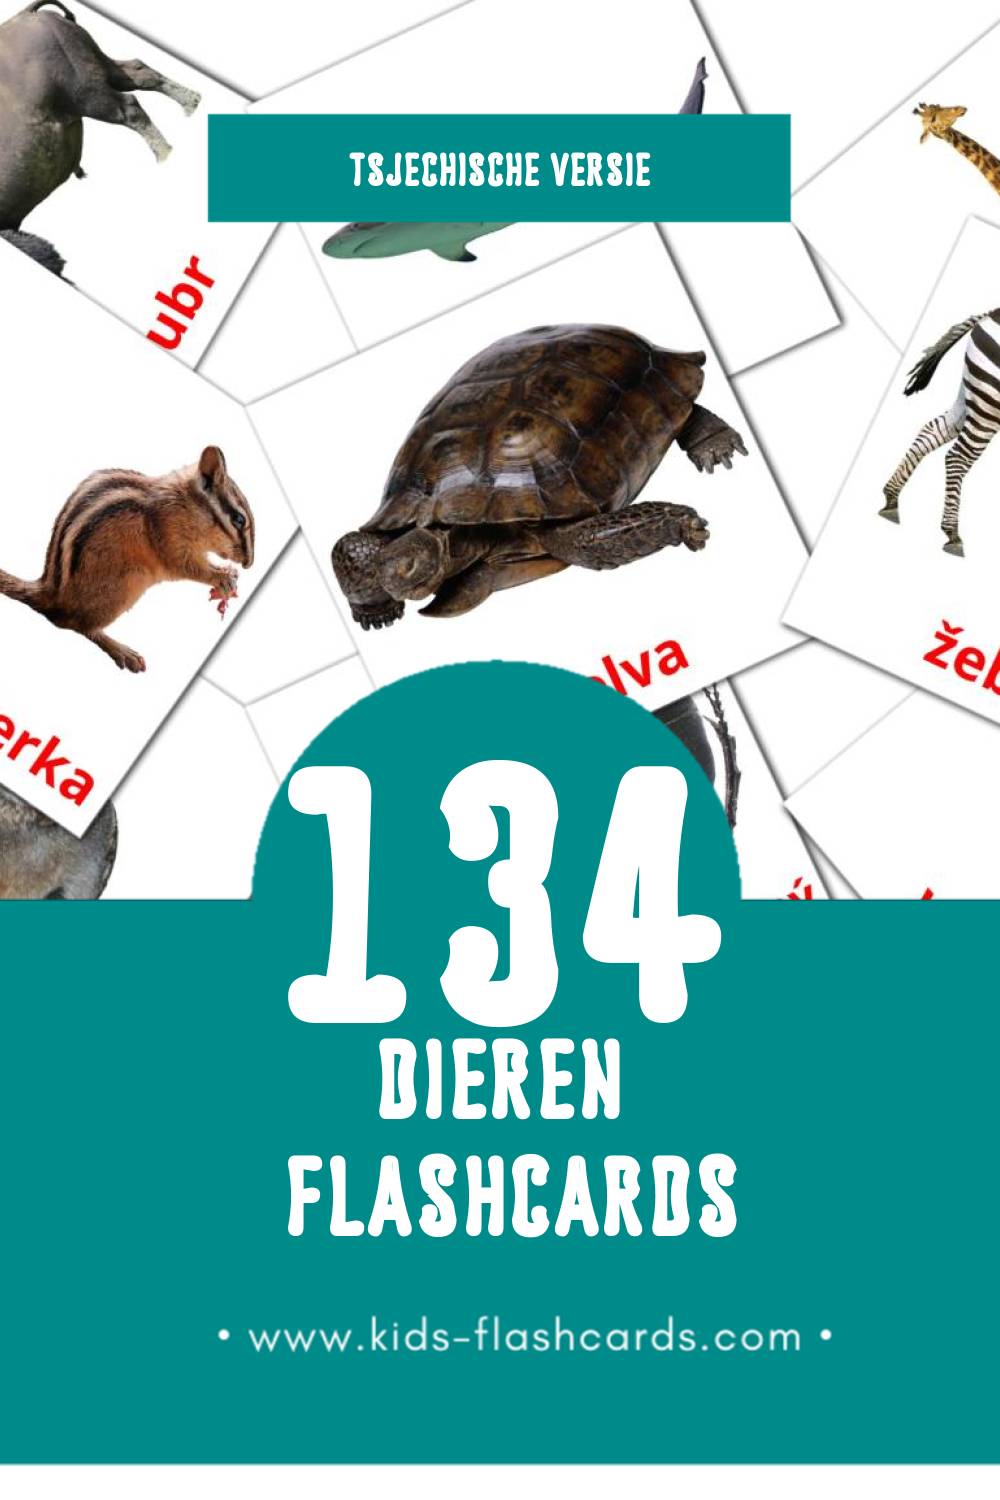 Visuele Zvířata Flashcards voor Kleuters (134 kaarten in het Tsjechisch)